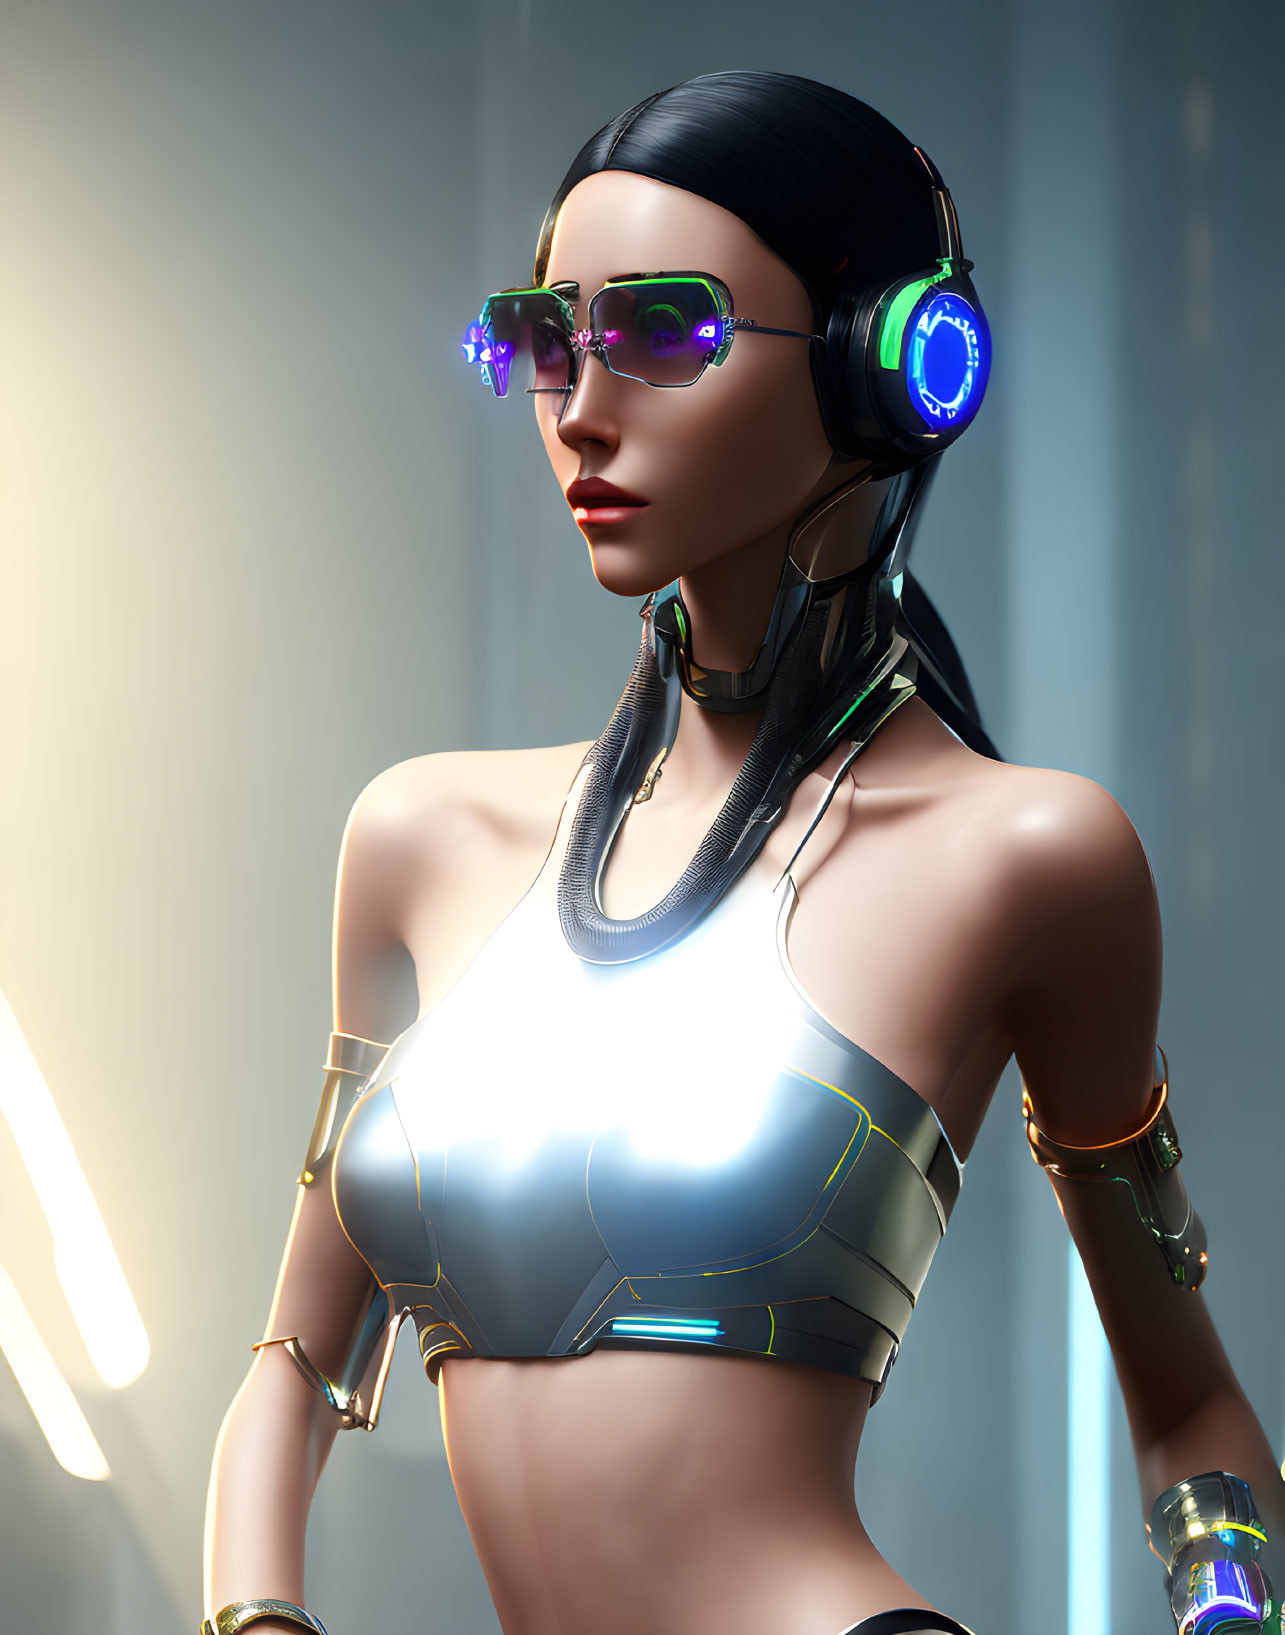  Futuristic cyberpunk girl